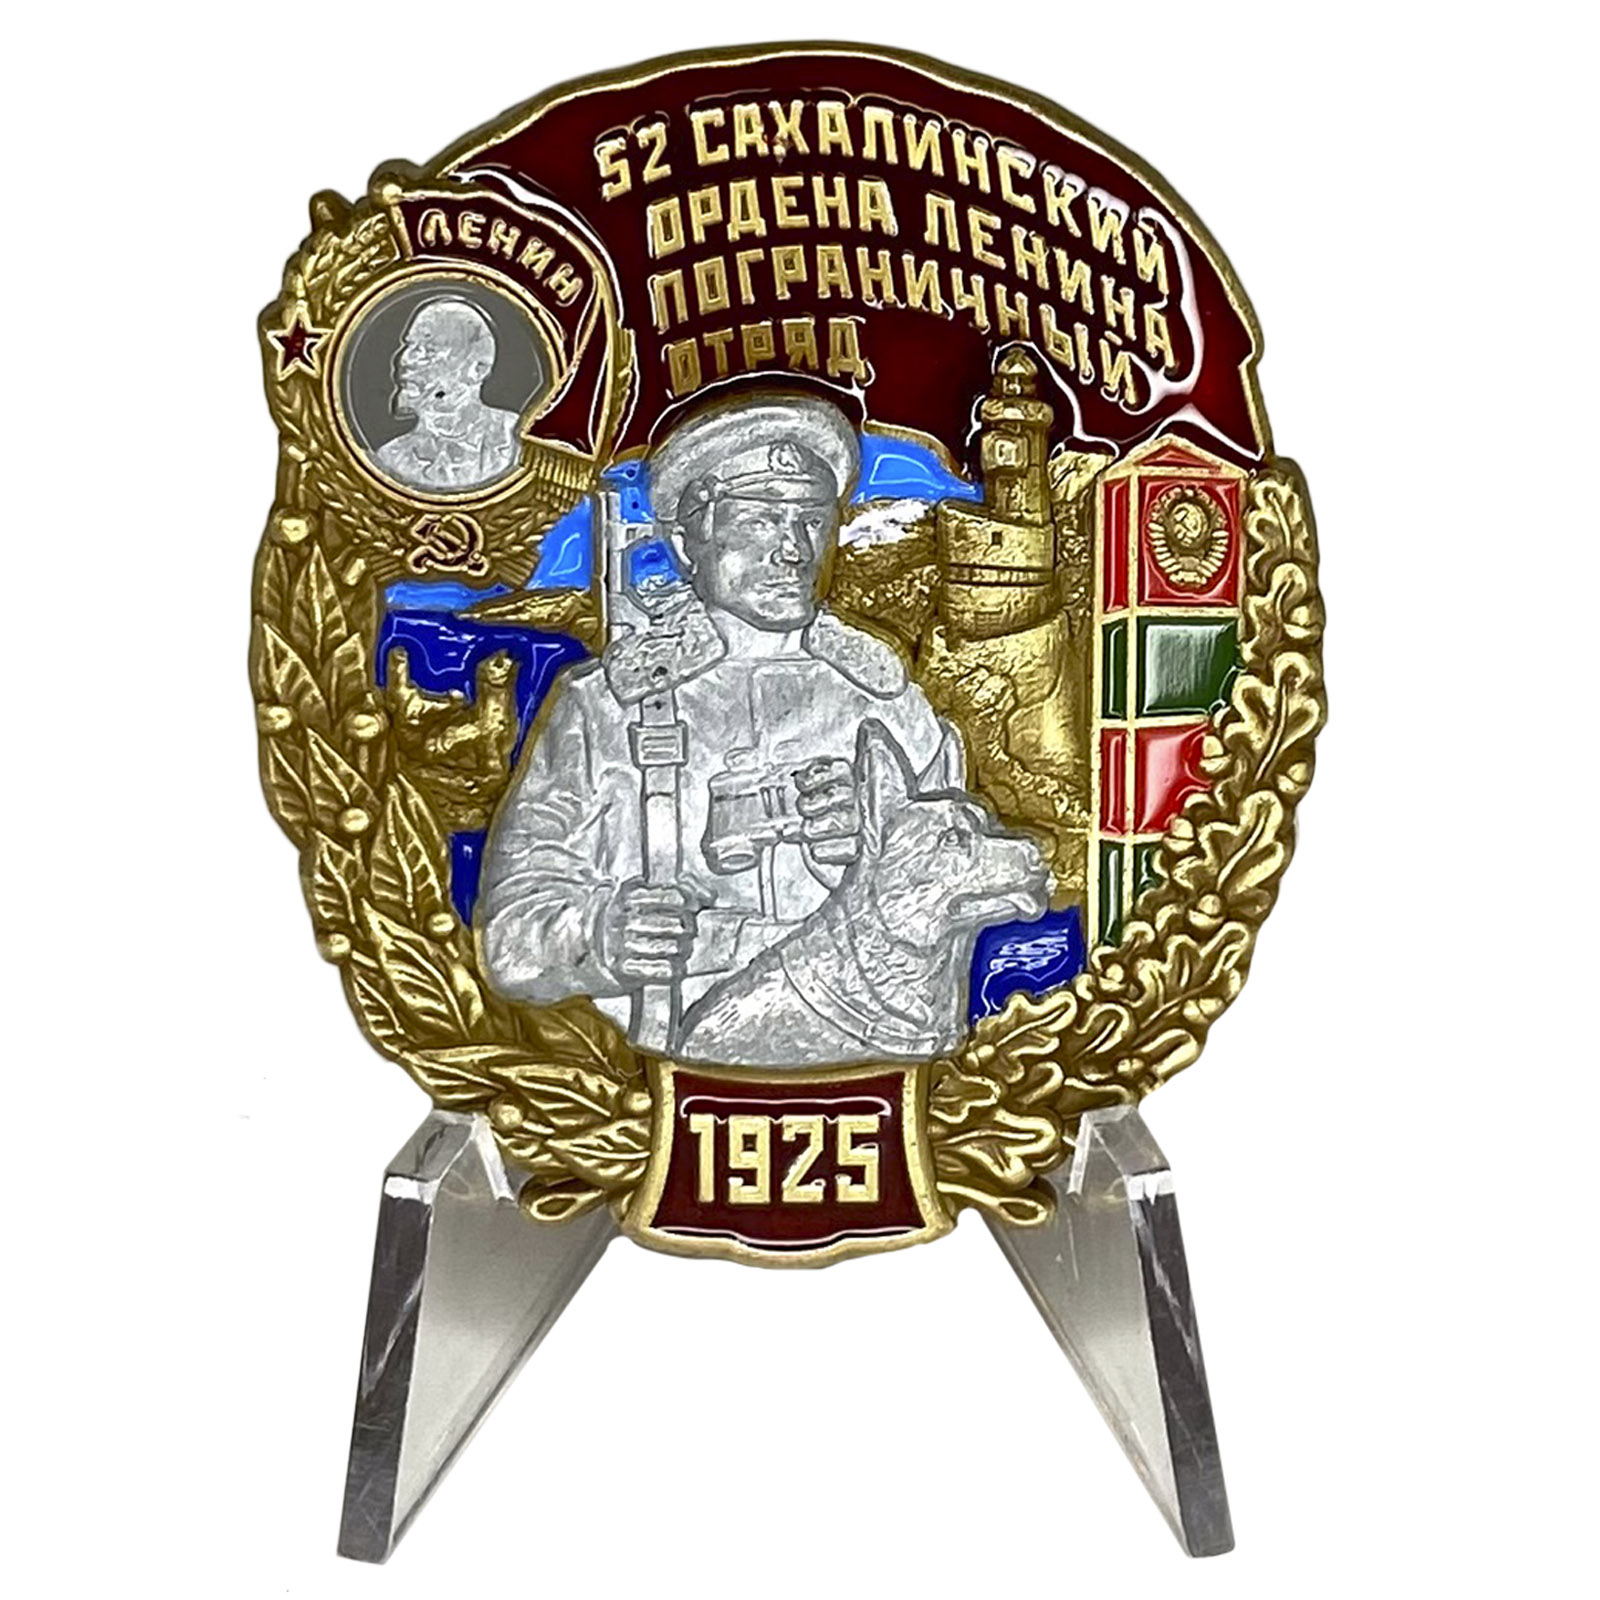 Купить знак 52 Сахалинский ордена Ленина Пограничный отряд на подставке онлайн